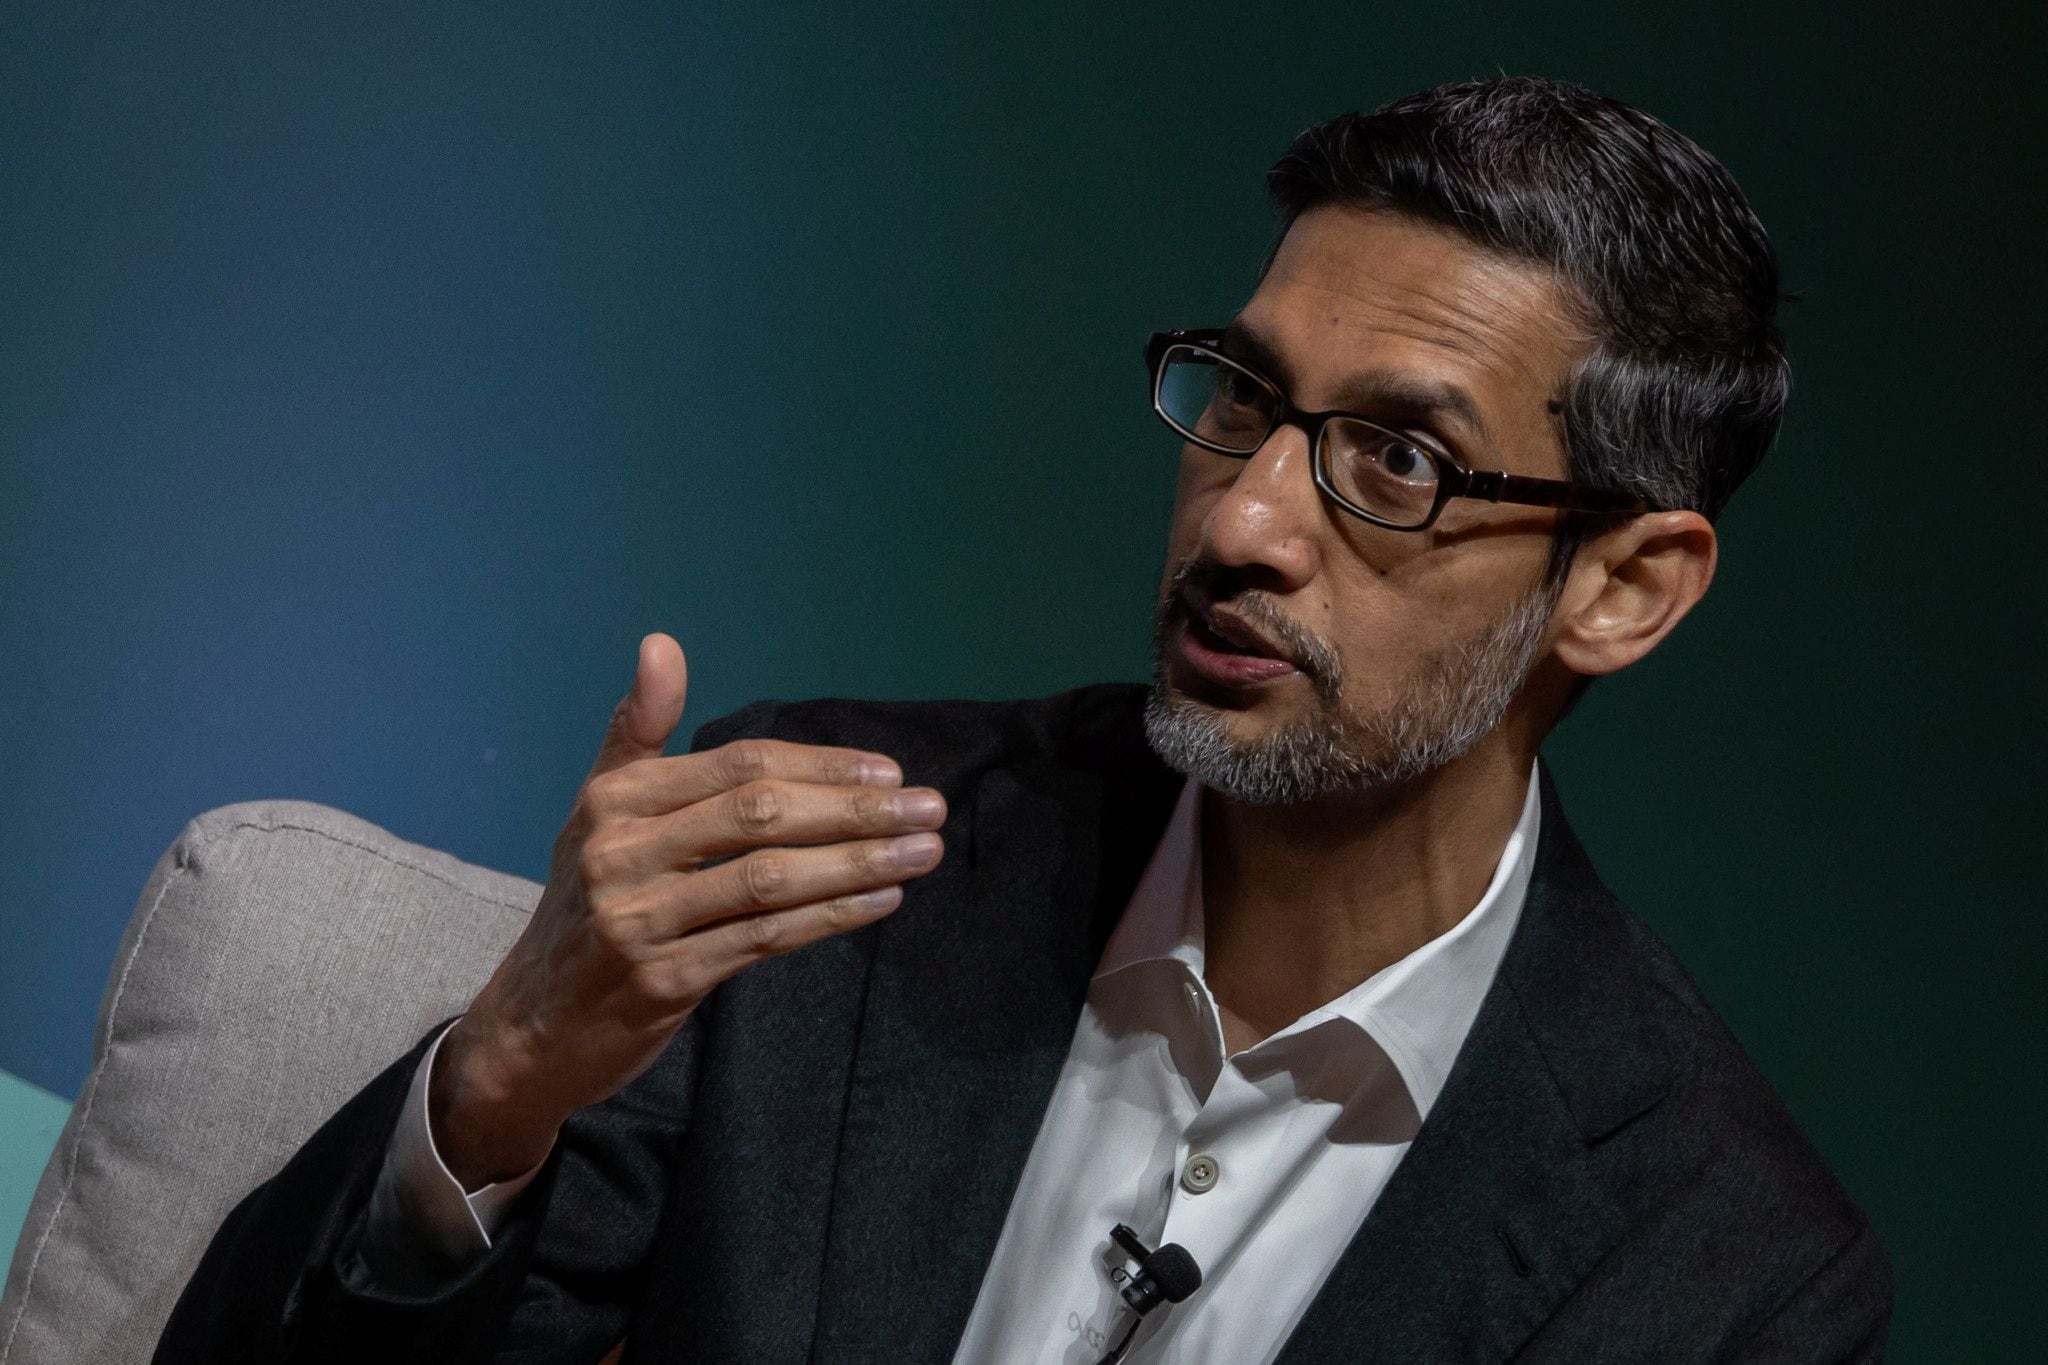 Sundar Pichai, CEO of Google and Alphabet Inc., indica que el avance con IA ha permitido el crecimiento de las compañías. REUTERS/Carlos Barria